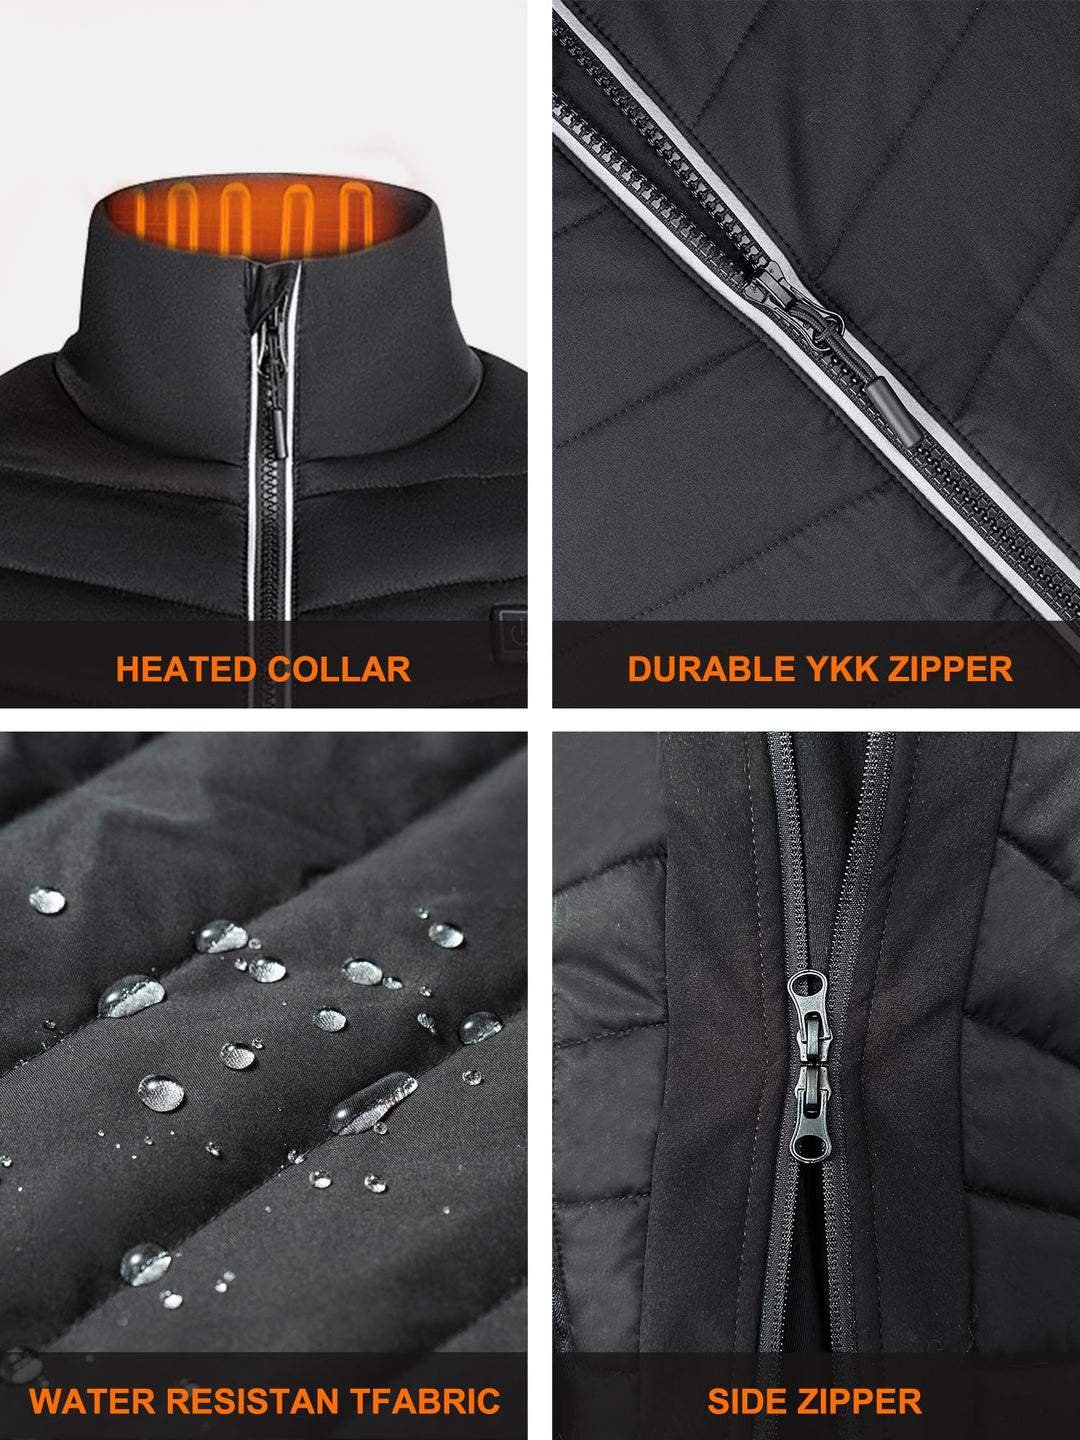 SGKOW winter men's black heated vest includes 7.4v battery pack – SGKOW ...